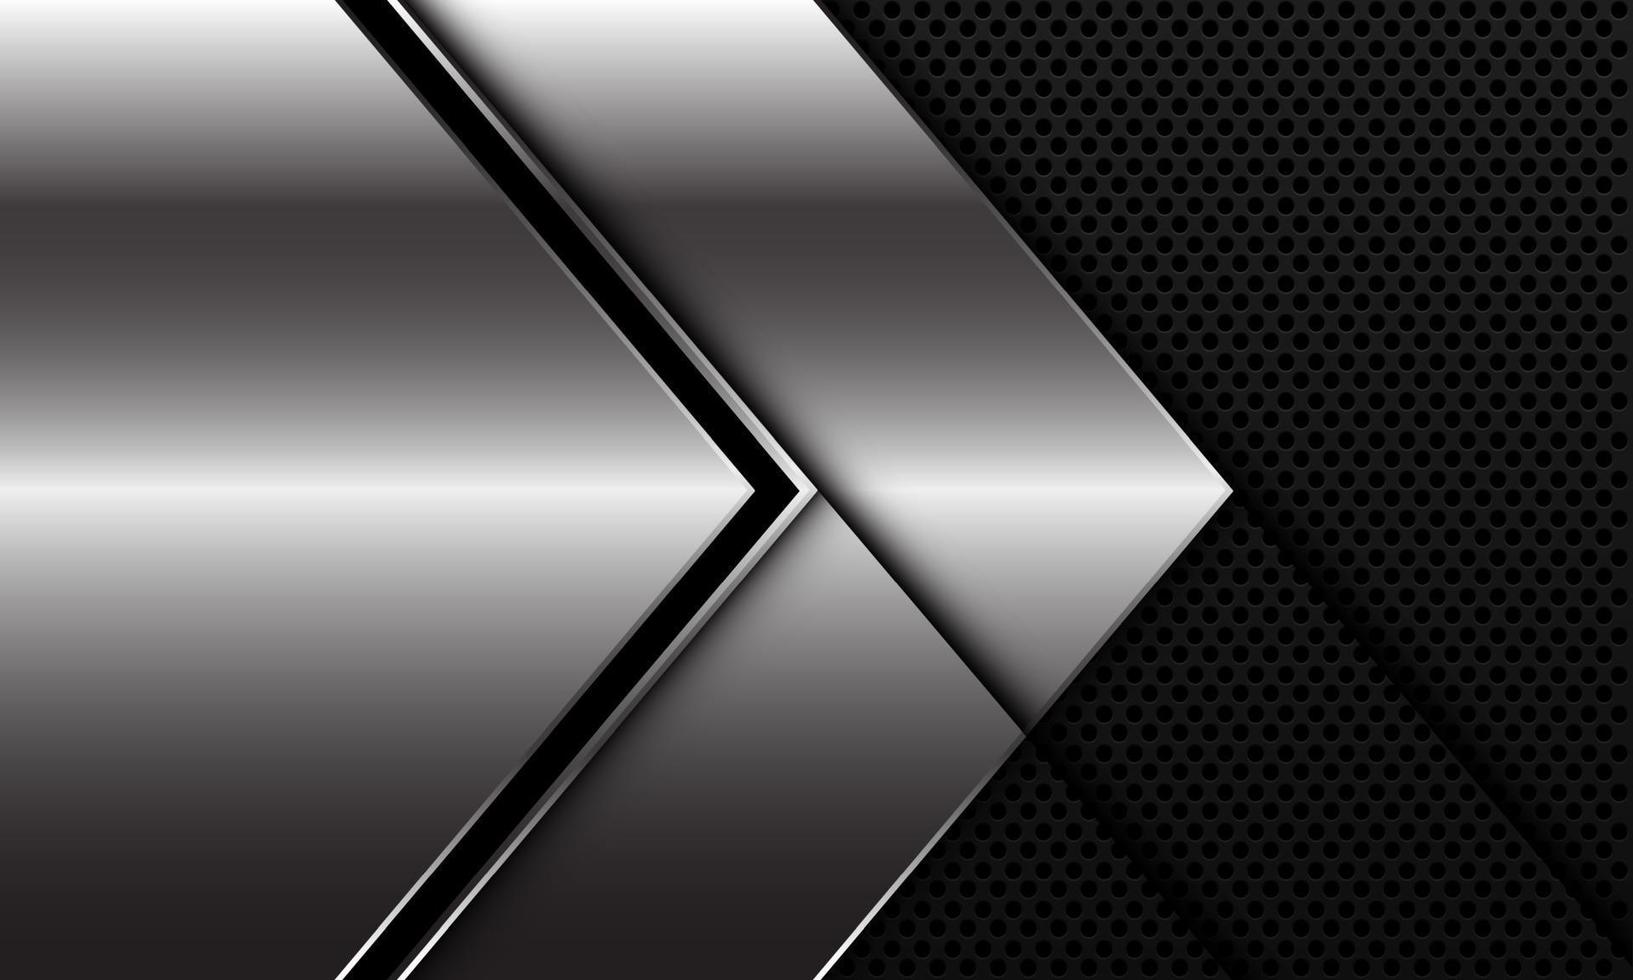 Dirección de flecha de línea negra plateada abstracta en círculo negro diseño de patrón de malla ilustración de vector de fondo futurista de lujo moderno.